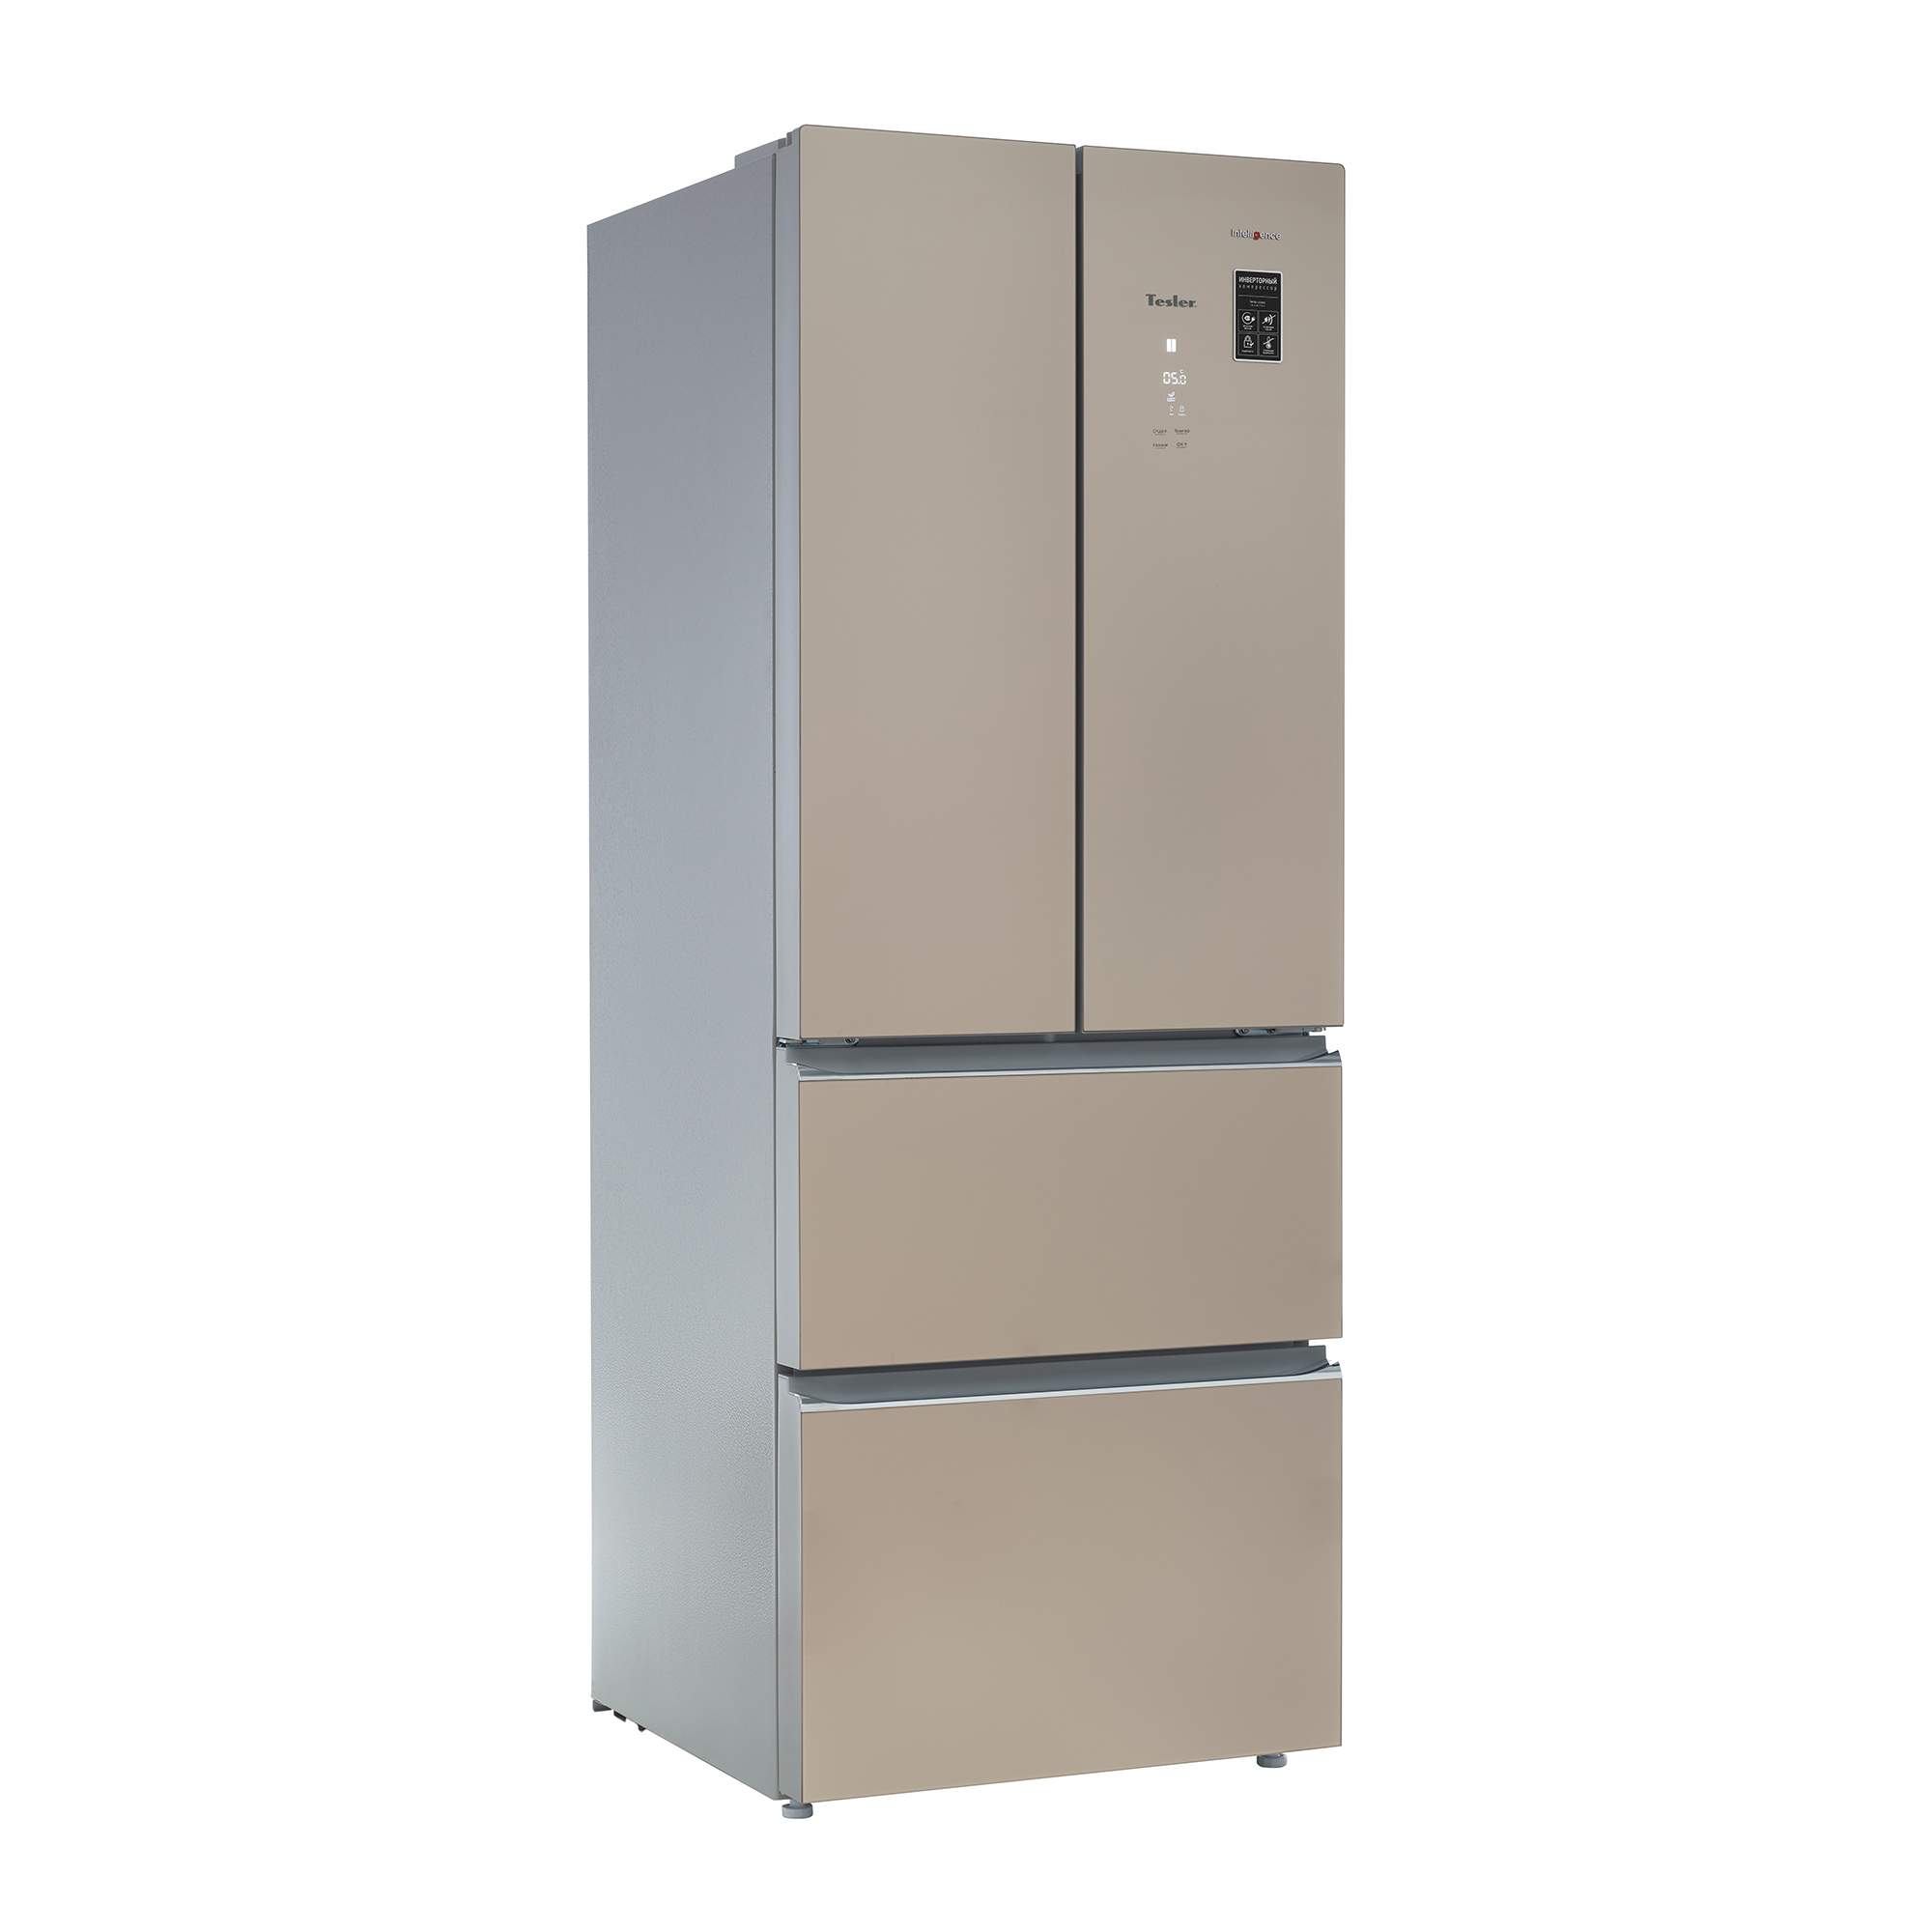 Холодильник Tesler RFD-361i. Холодильник Tesler RFD-361i Crystal Beige. Tesler RFD-361i бежевый. Холодильник Теслер RFD 3601. Холодильники tesler купить